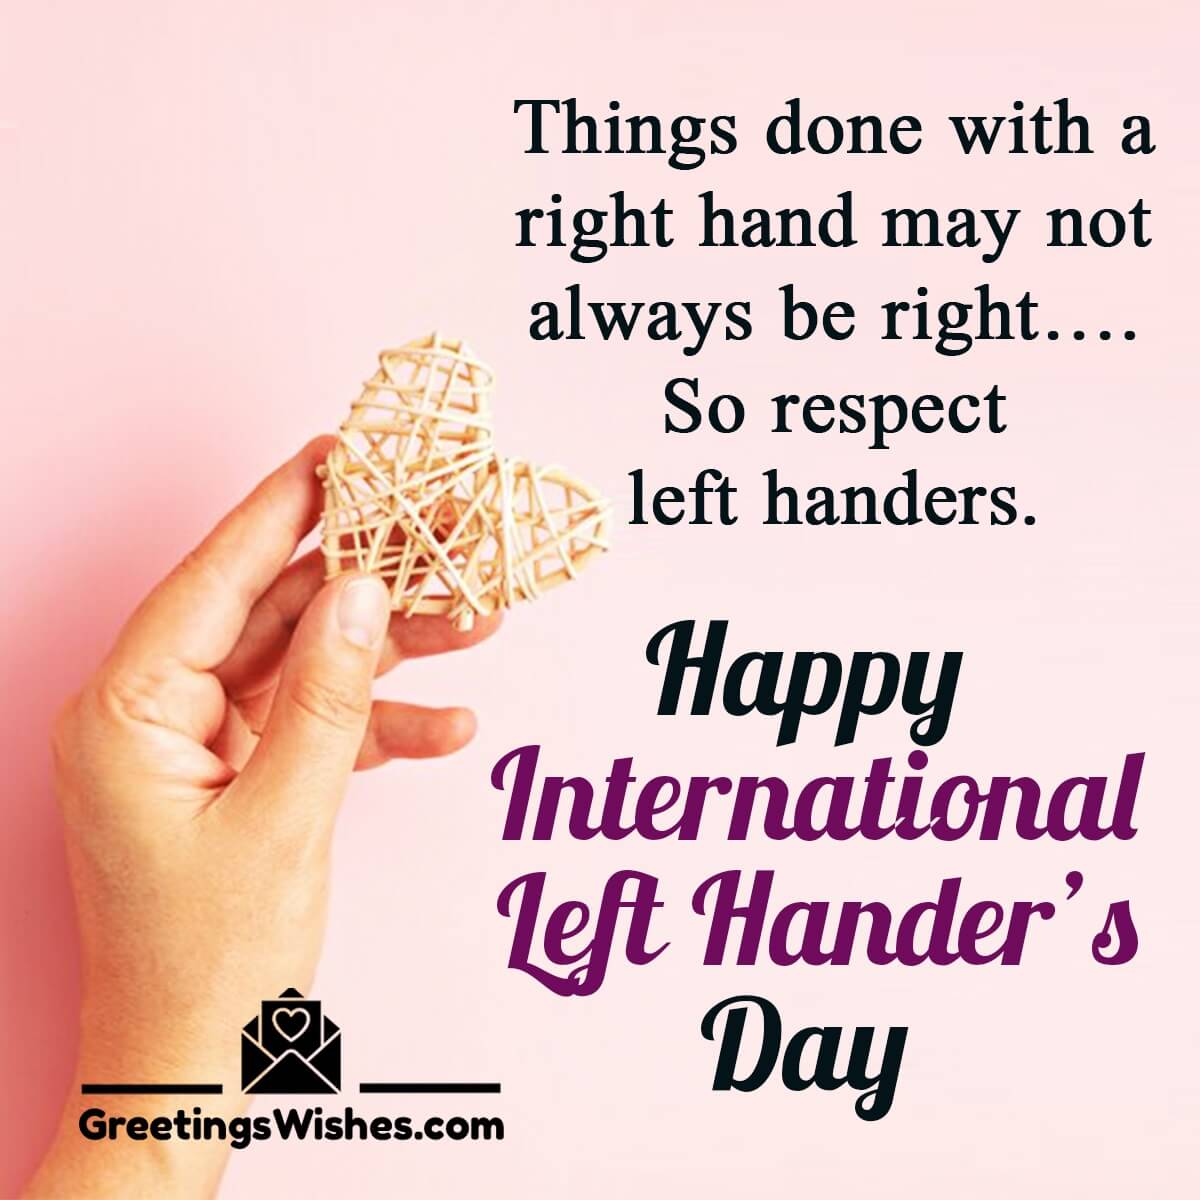 Happy International Left Handers Day Greetings